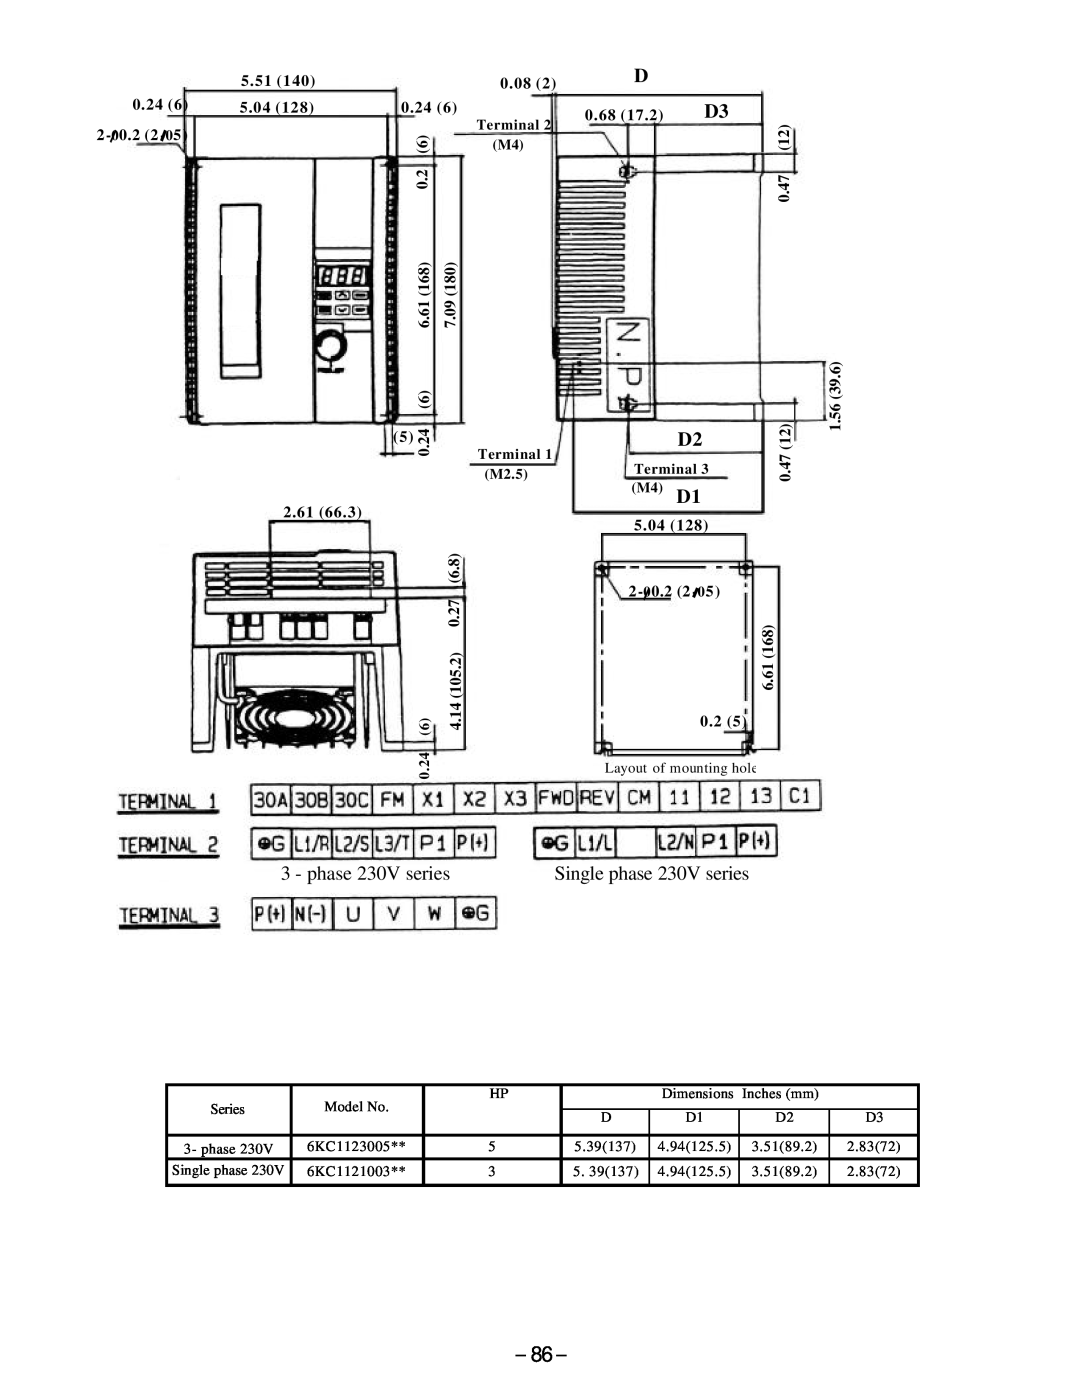 GE AF-300, C11 manual Single phase 230V series 